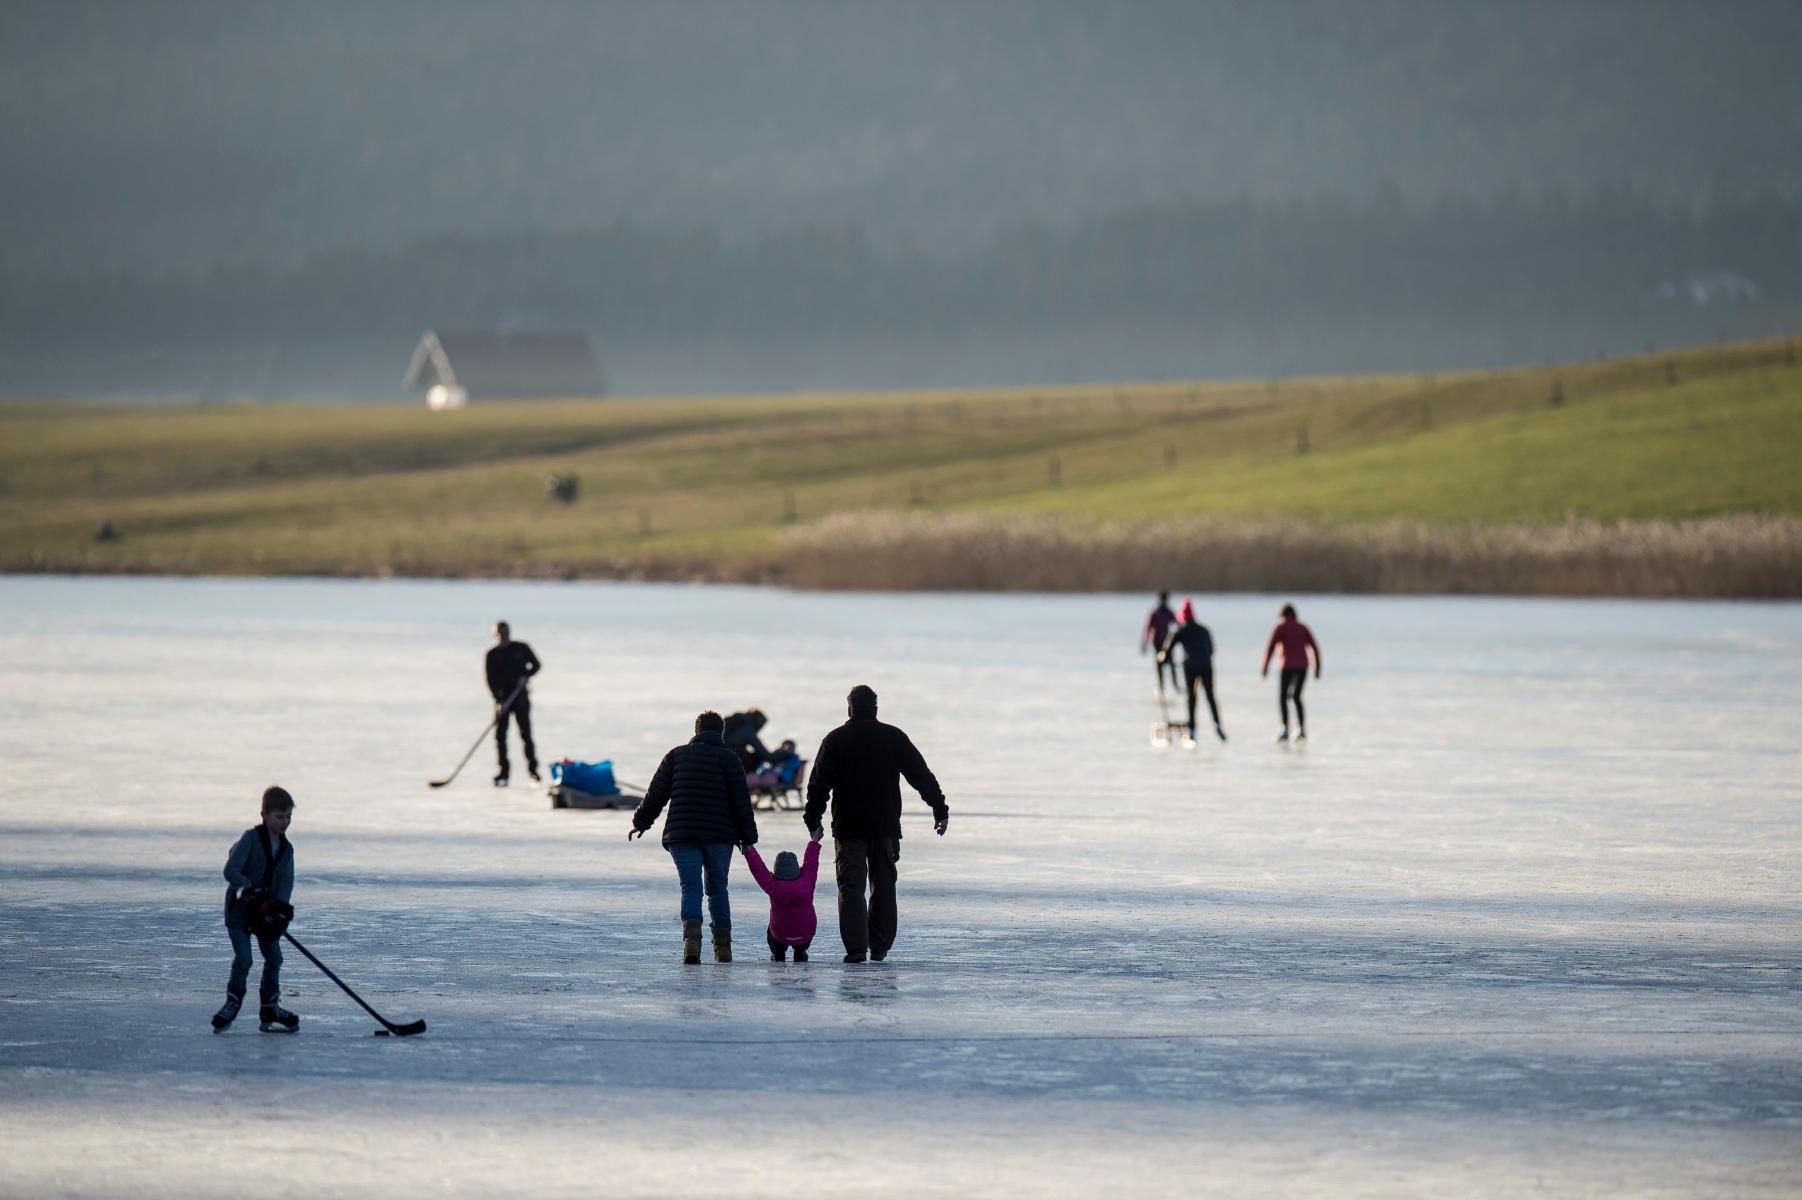 Patineurs sur le lac des Tailleres gele

La Brevine, le 8 decembre 2016
Photo: Lucas Vuitel

 LAC DES TAILLERES